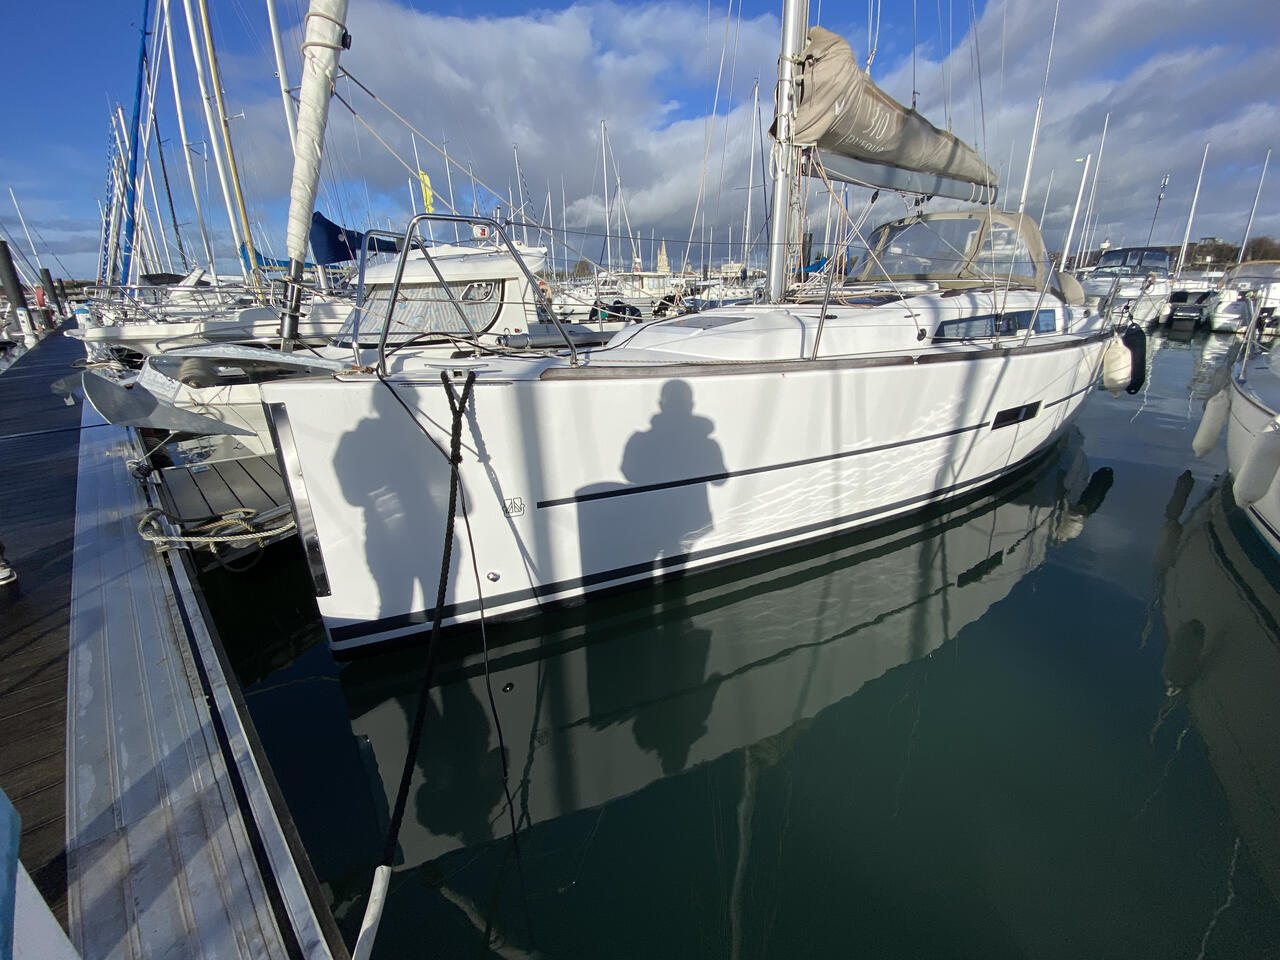 Dufour 310 GL - Yacht Charter La Rochelle & Boat hire in France Bay of Biscay La Rochelle La Rochelle 5